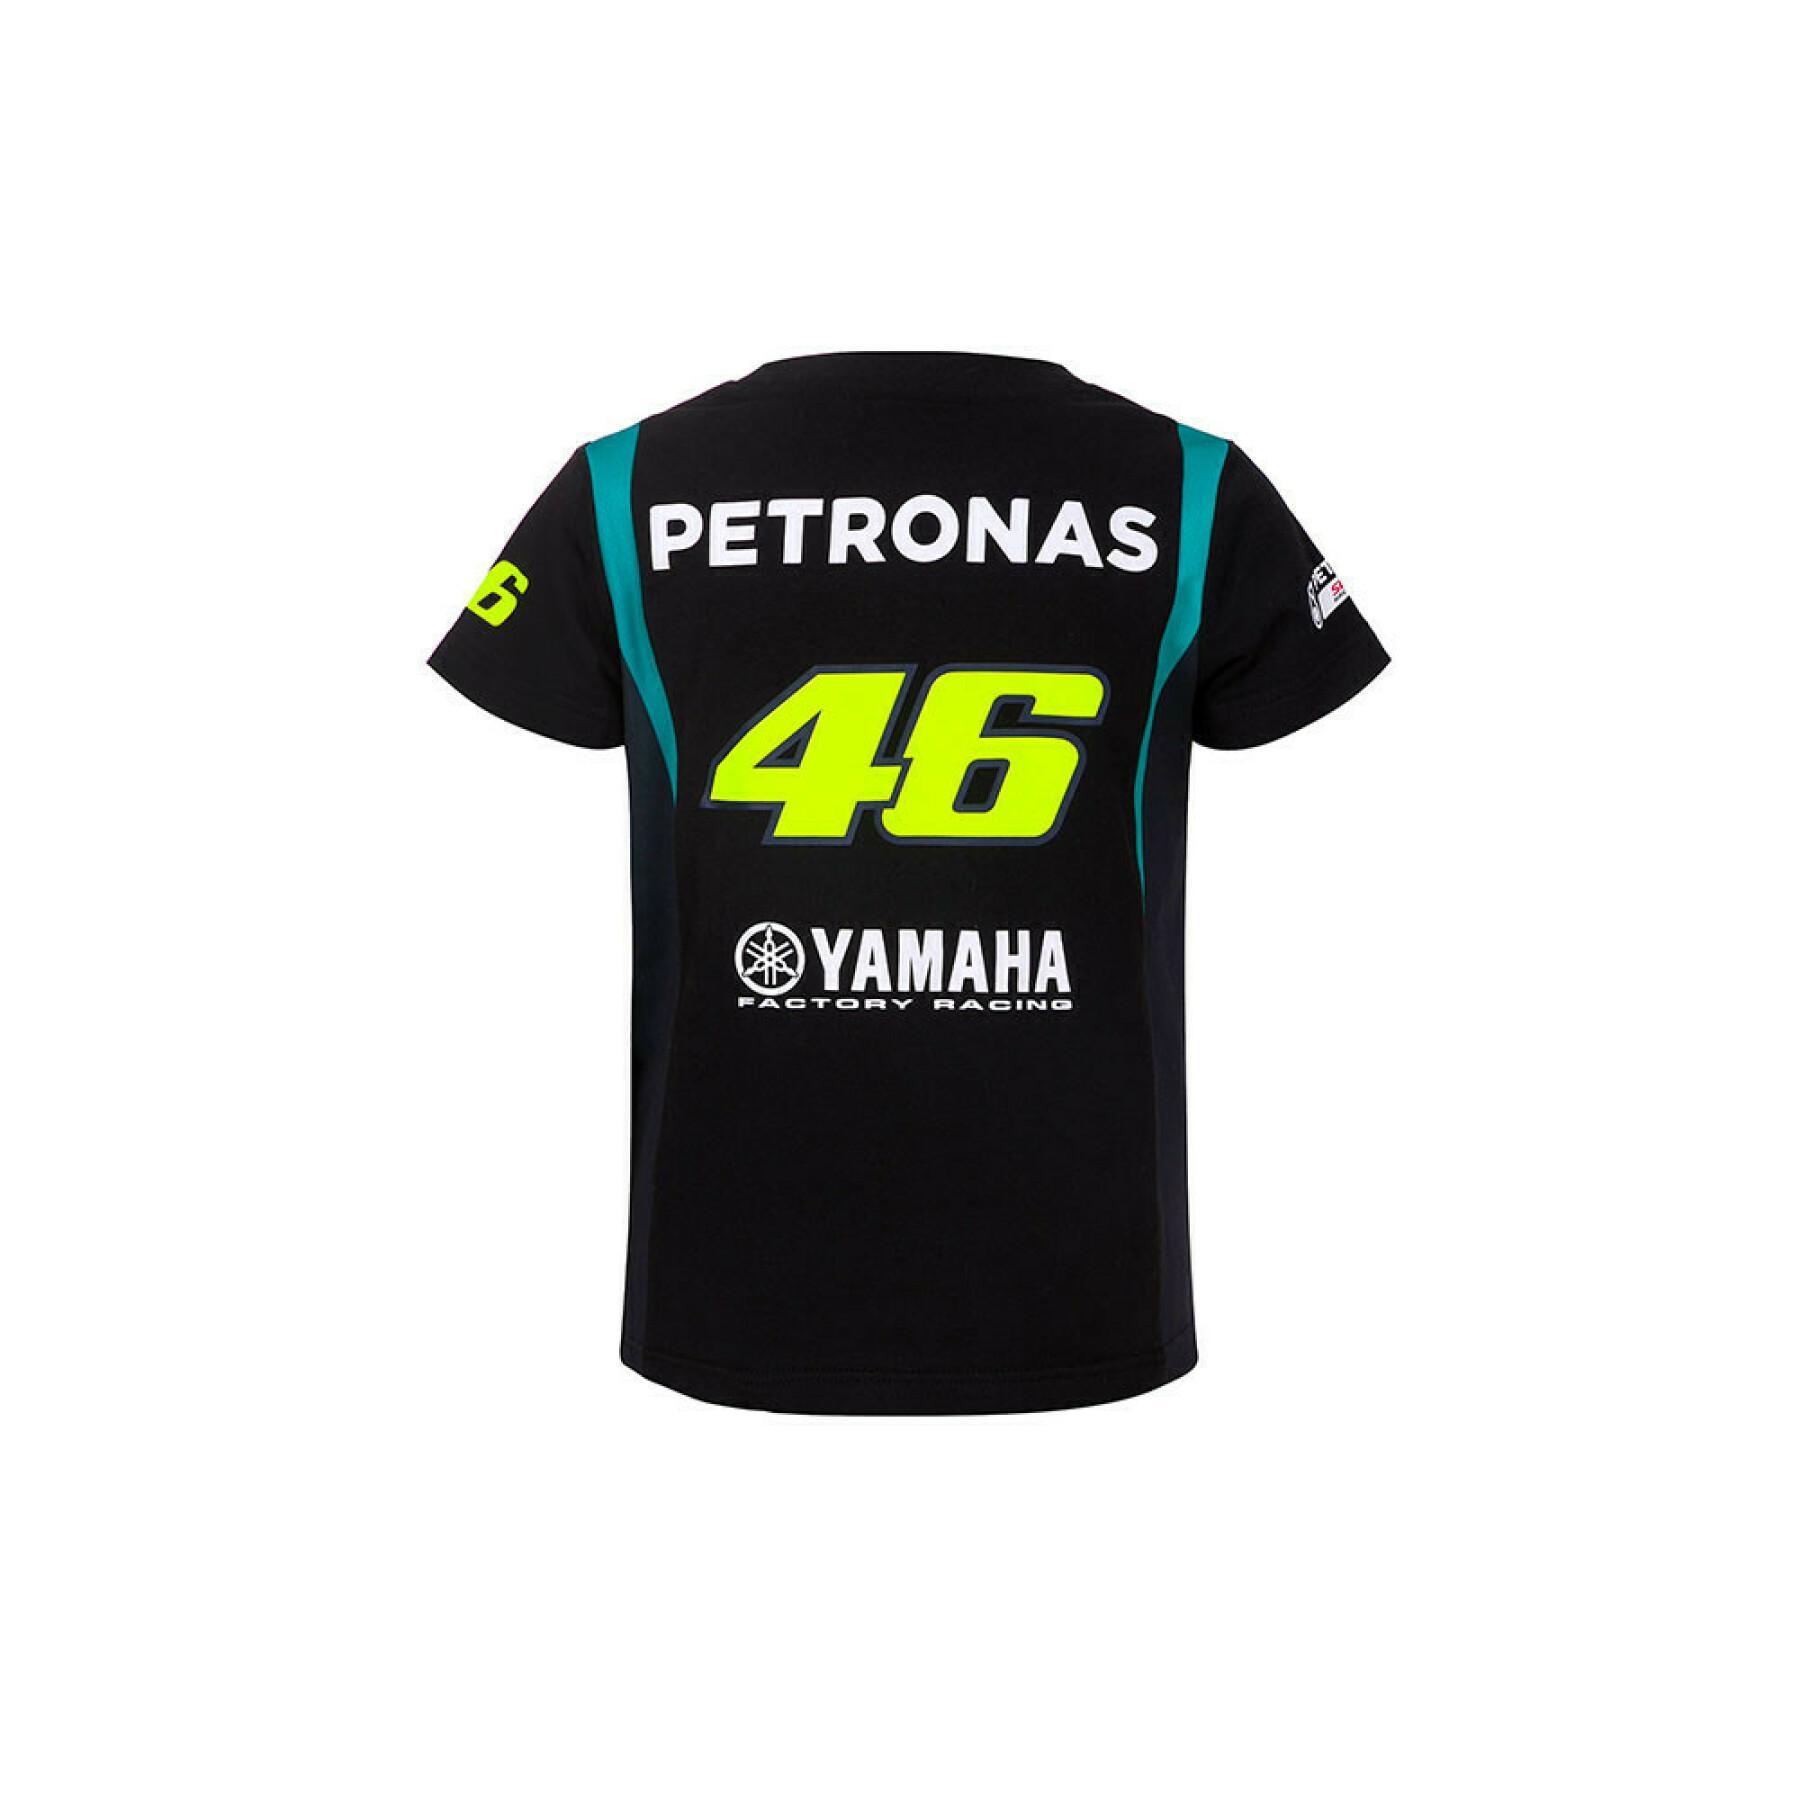 Koszulka dziecięca VRl46 Petronas dual